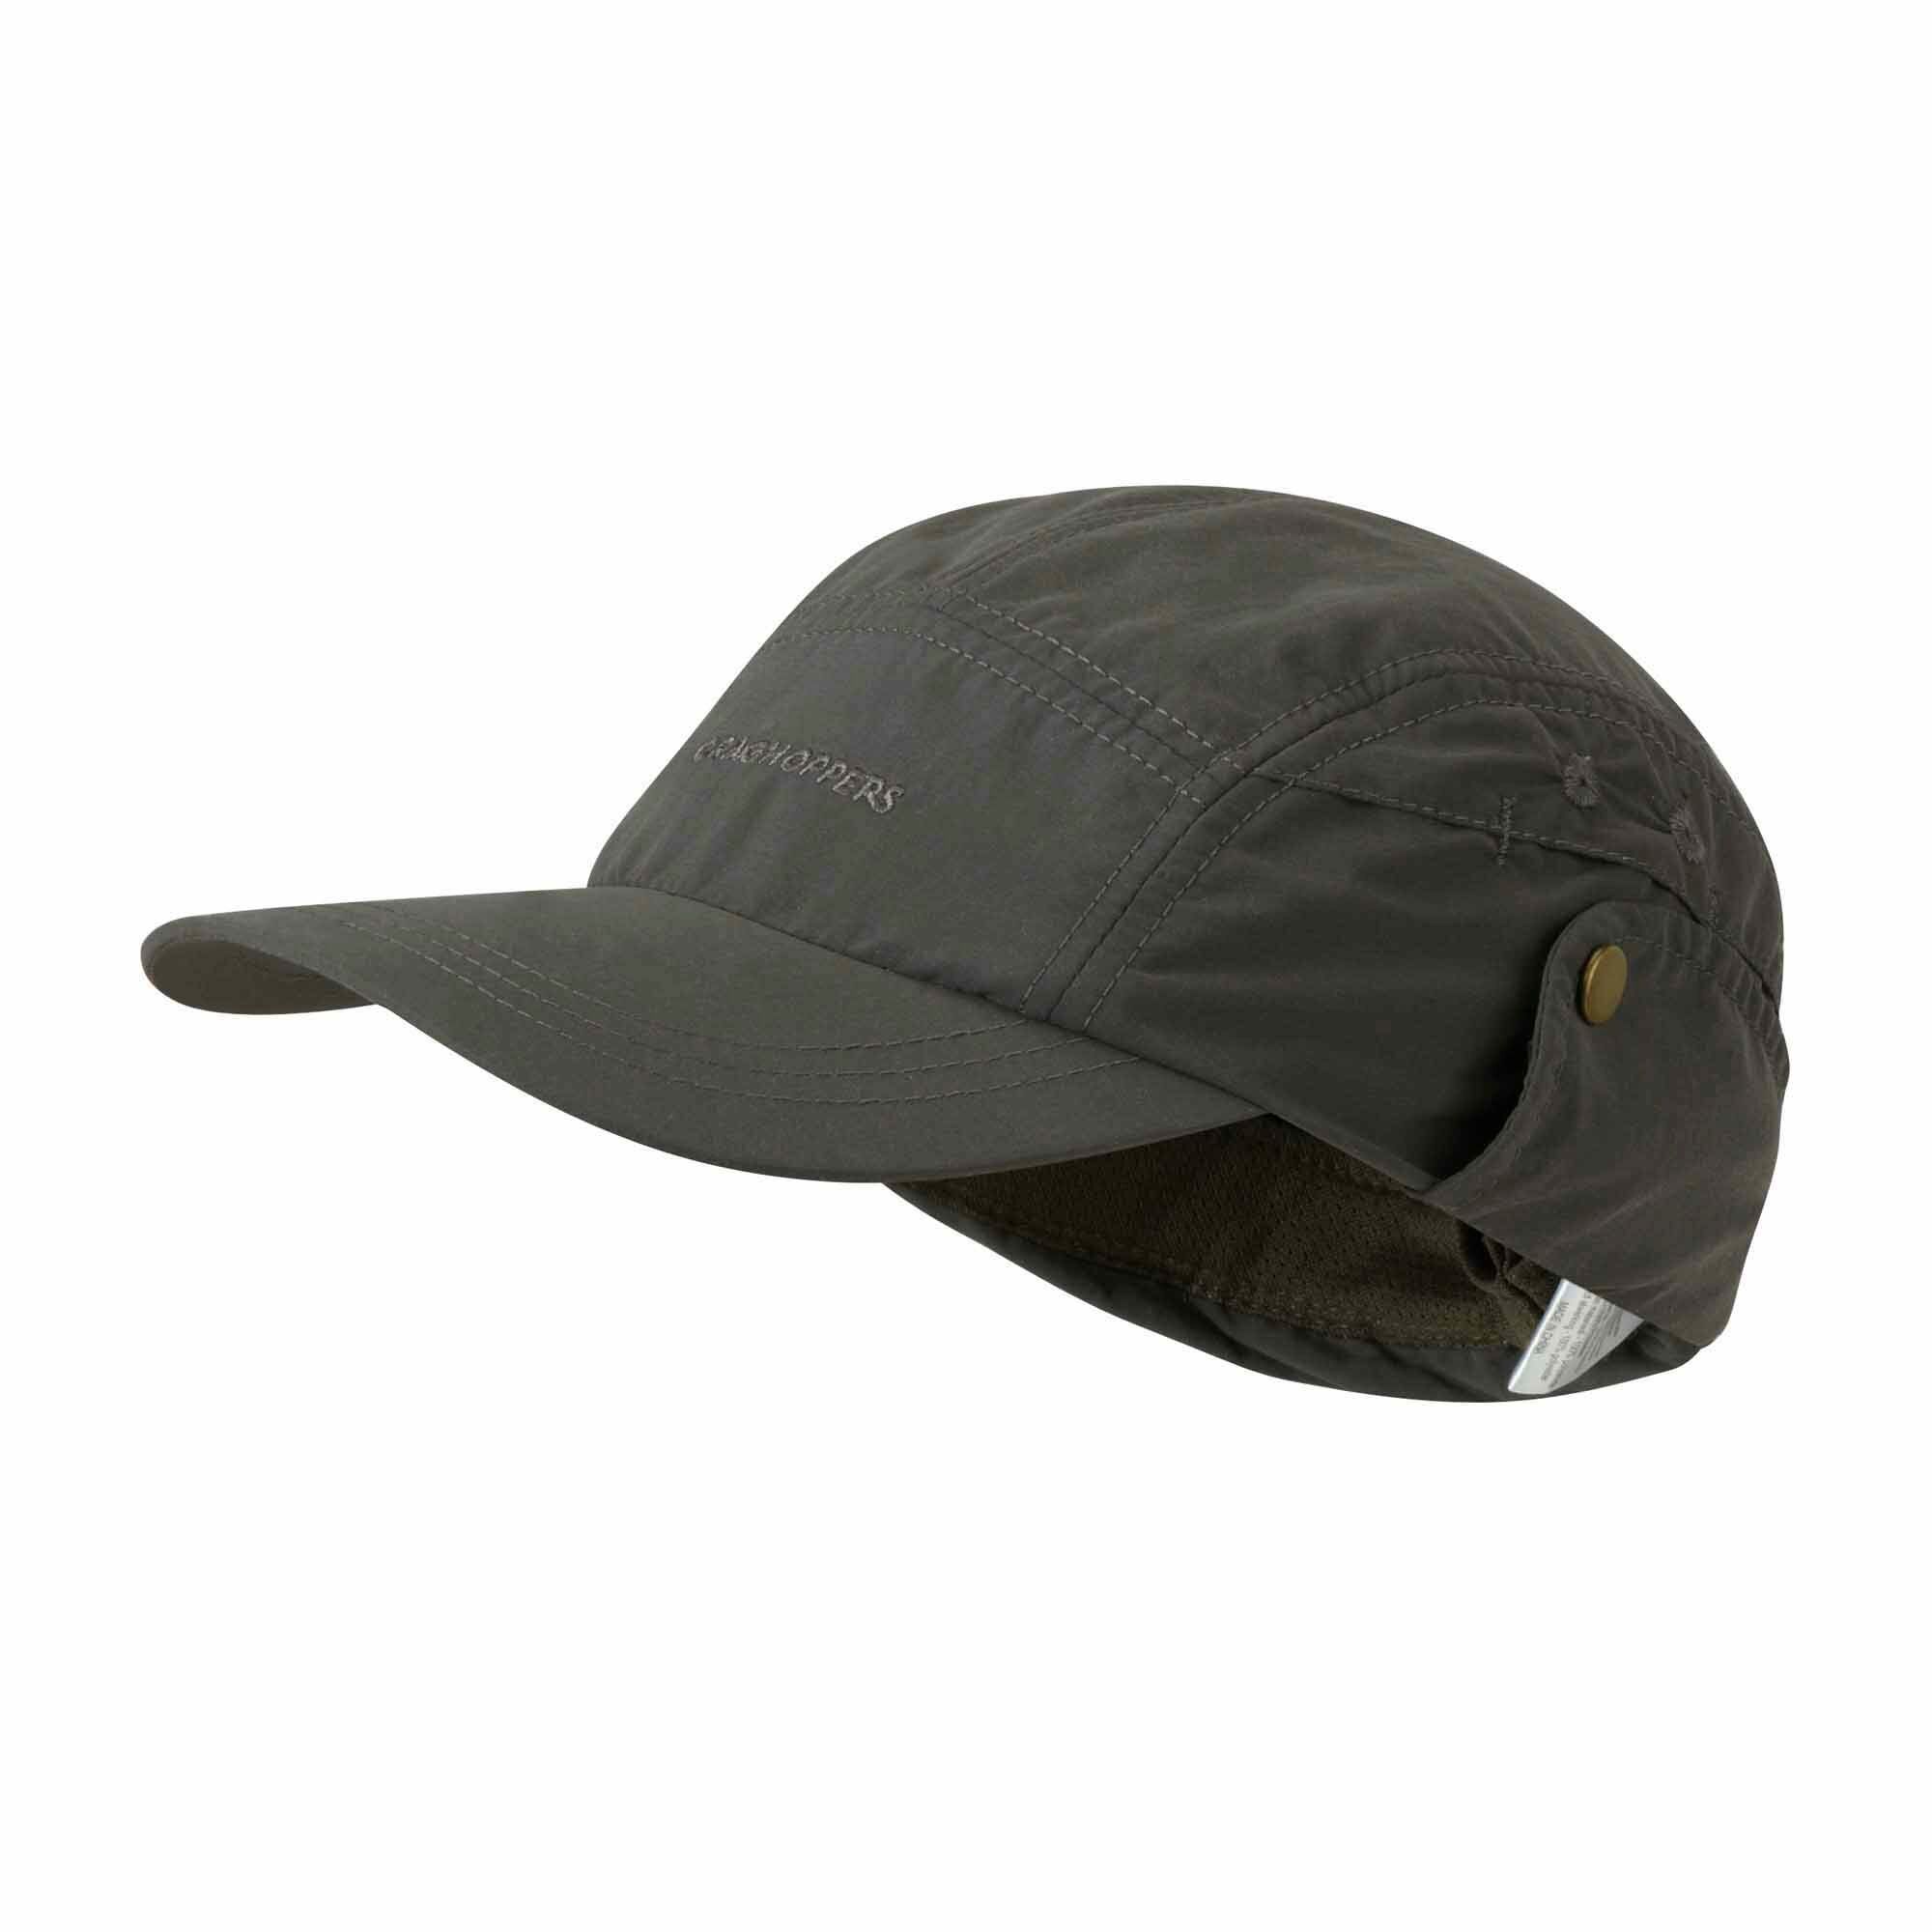 Craghoppers - UV desert hat for children - Dark khaki